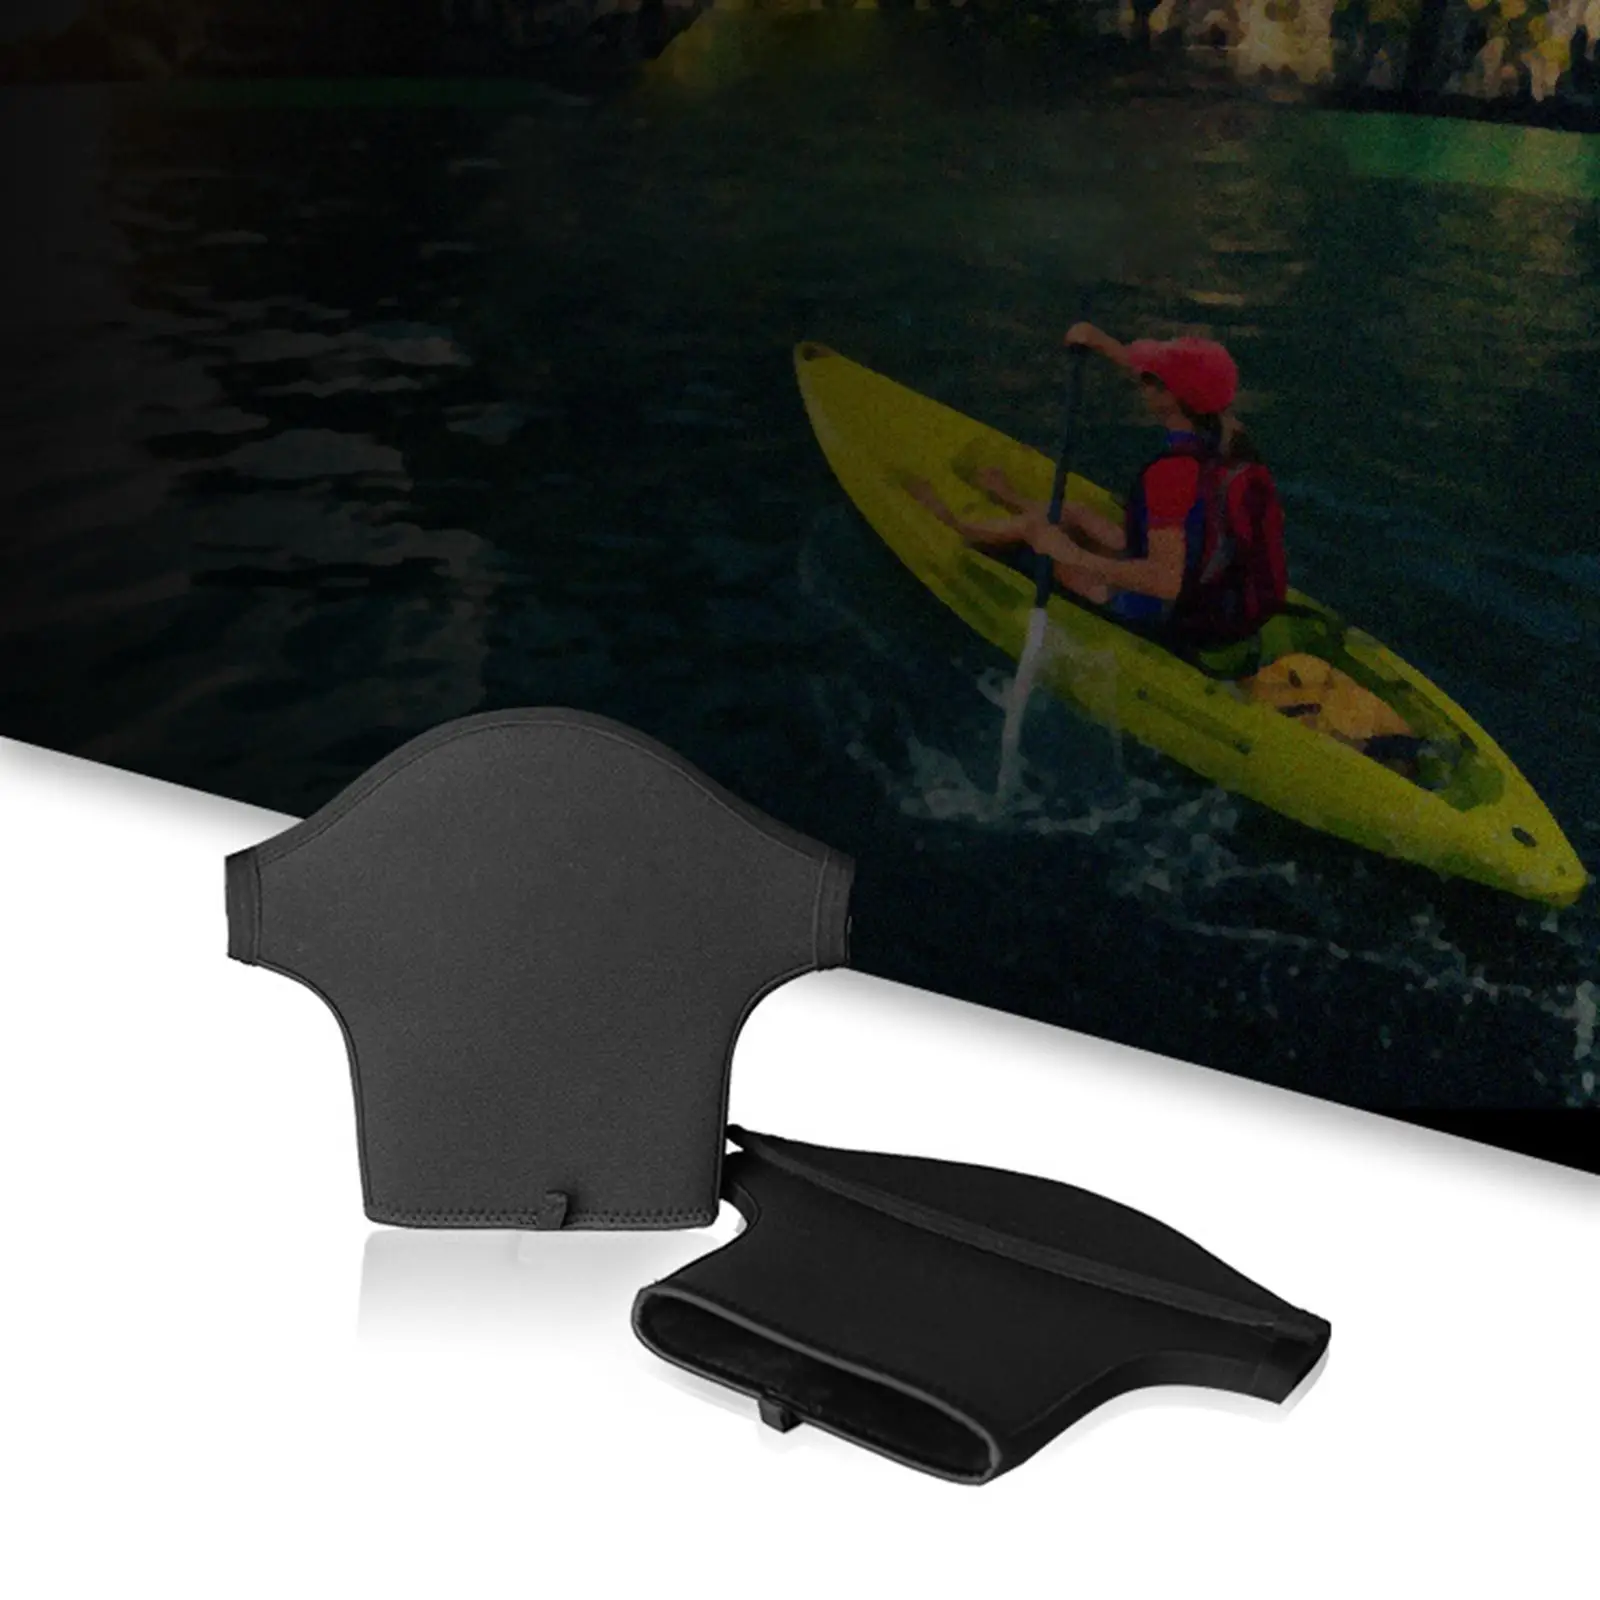 2x Kayak Paddle Mitts Neoprene Kayak Paddle Grips Gloves for Rafting Touring